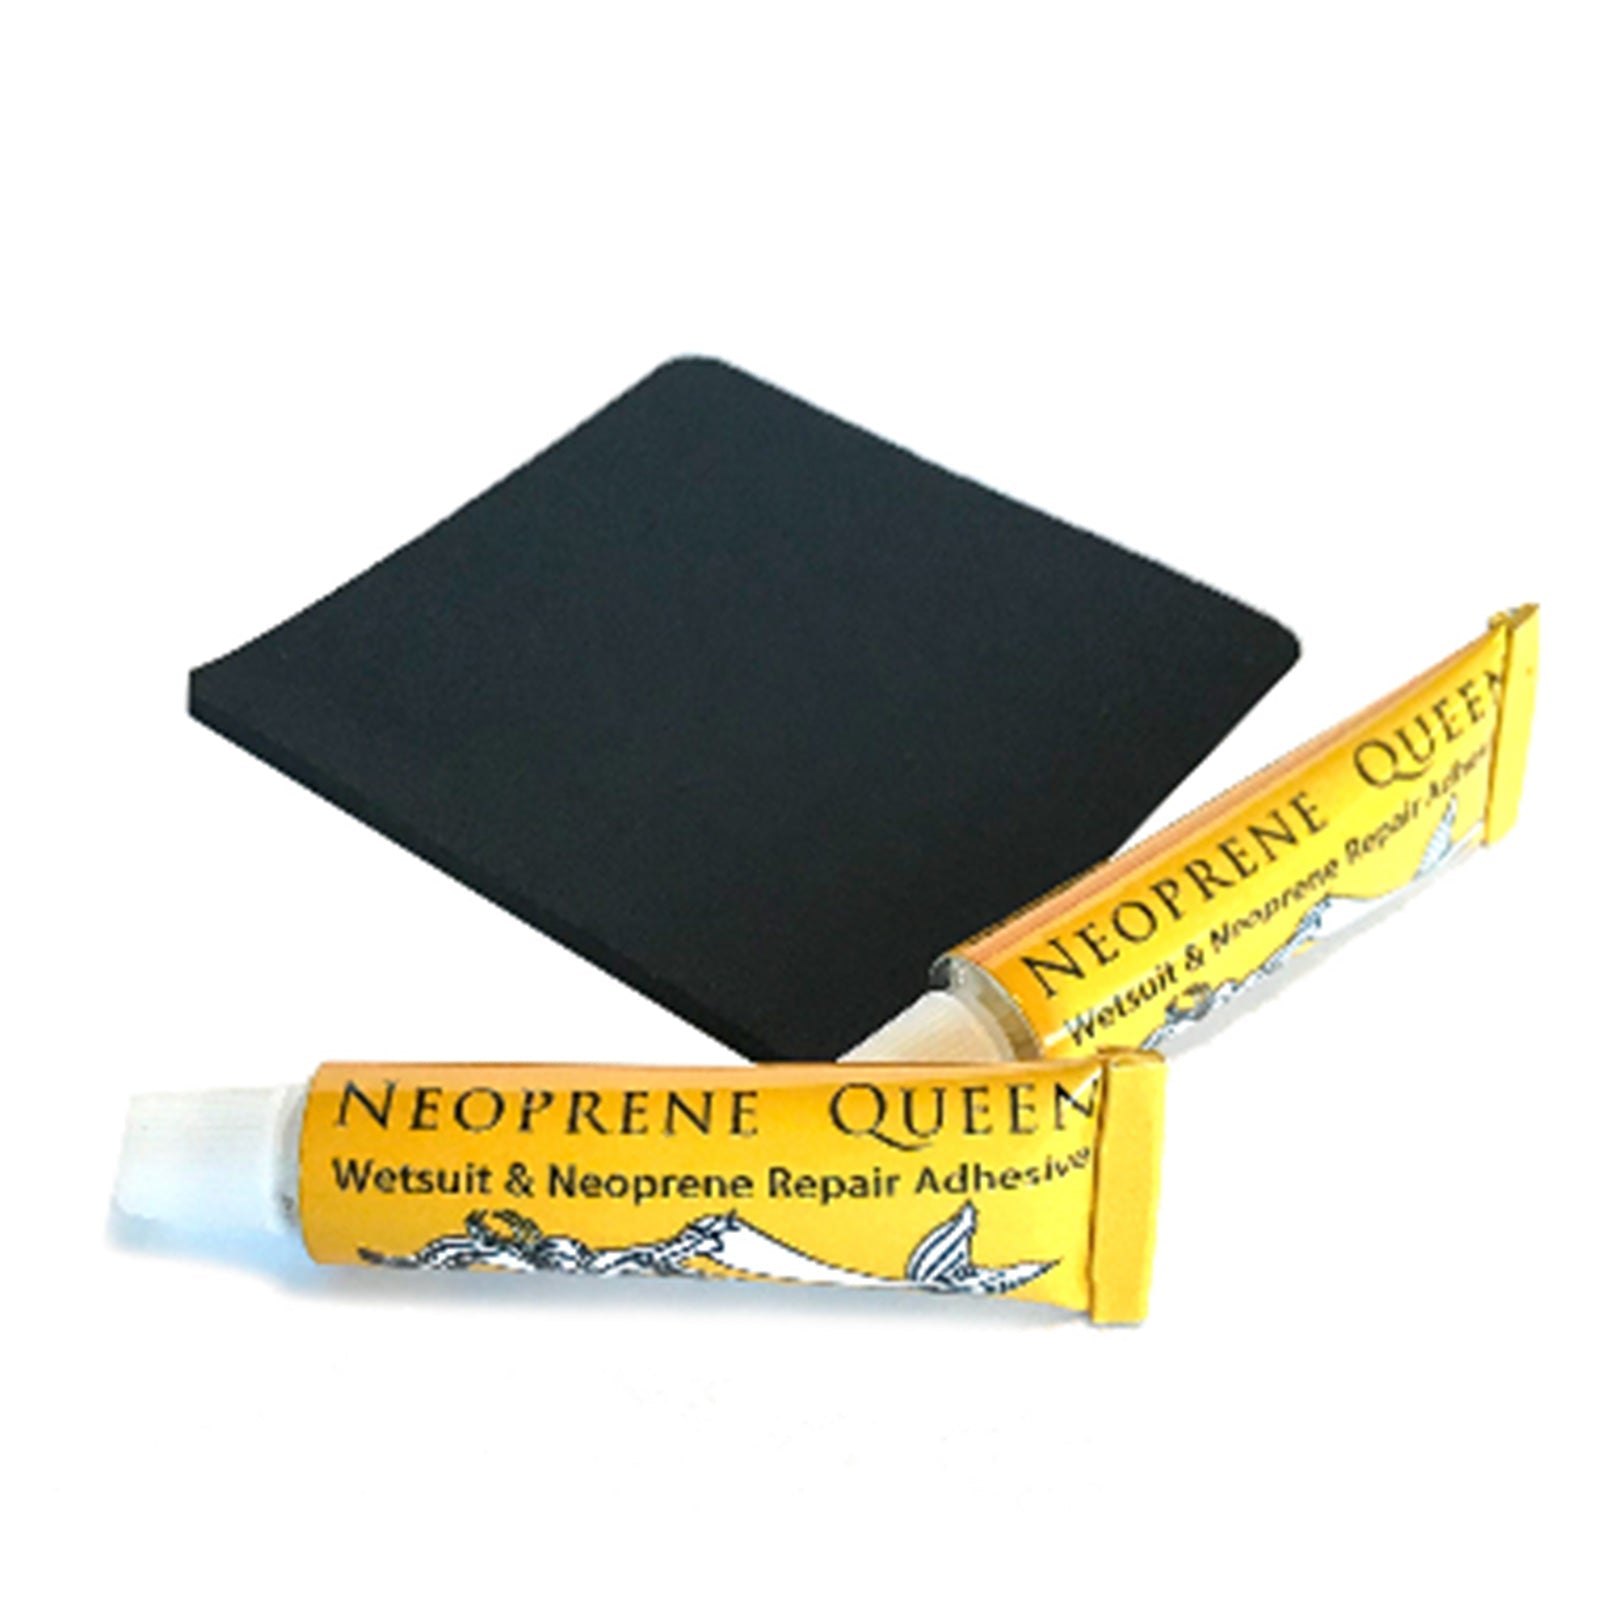 Neoprene Queen Wetsuit Repair Kit (Small)